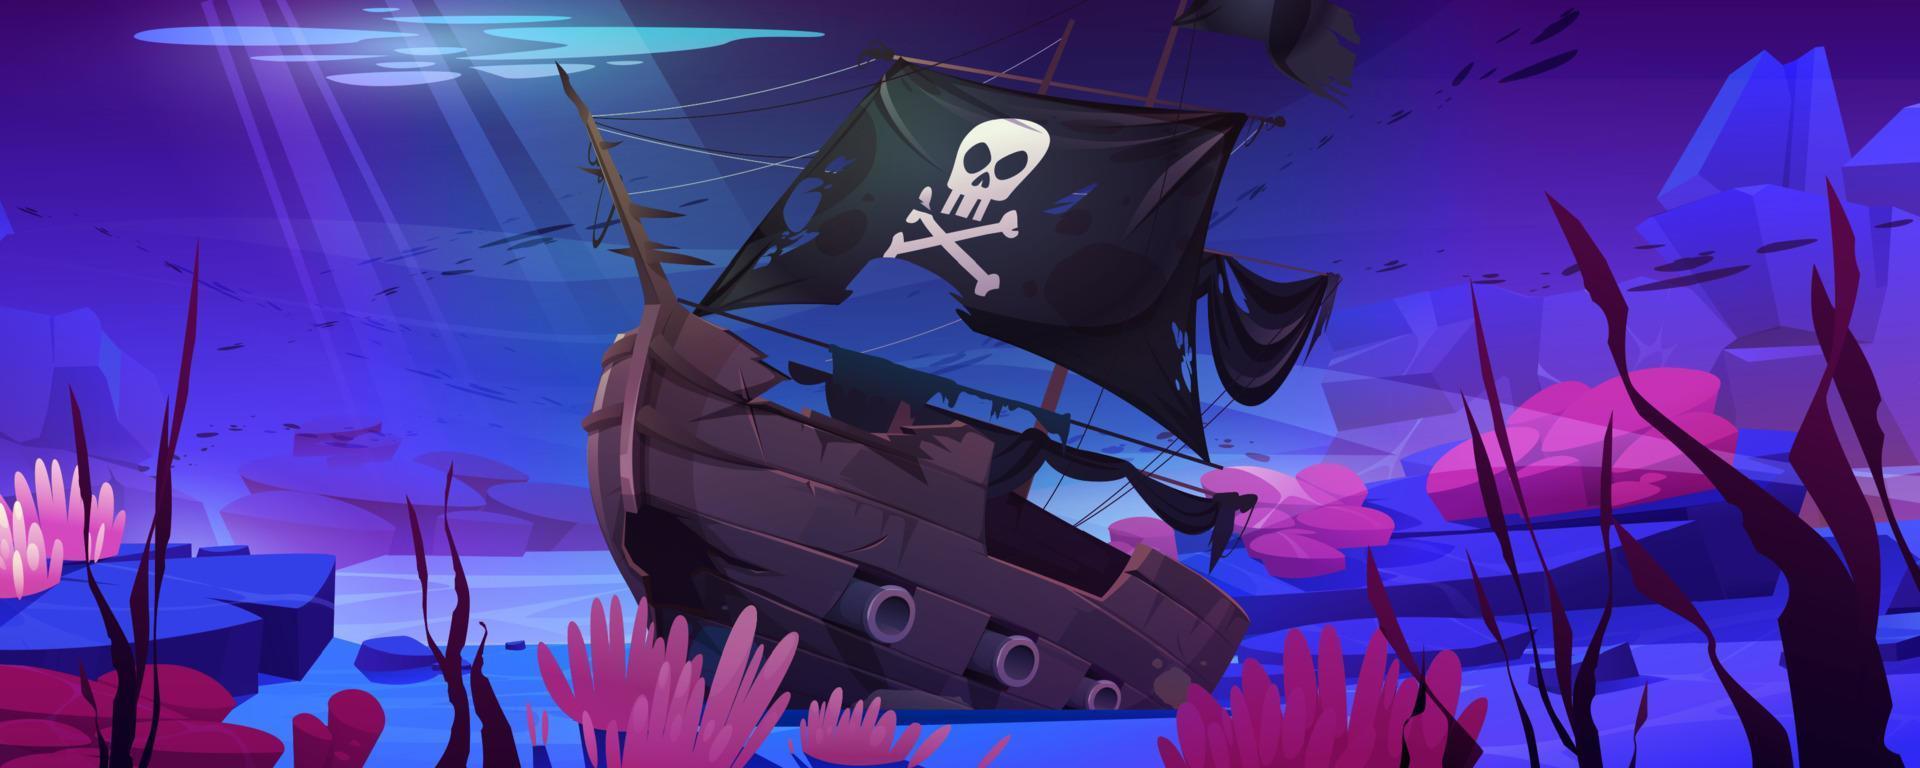 barco pirata naufragio, barco hundido con jolly roger vector